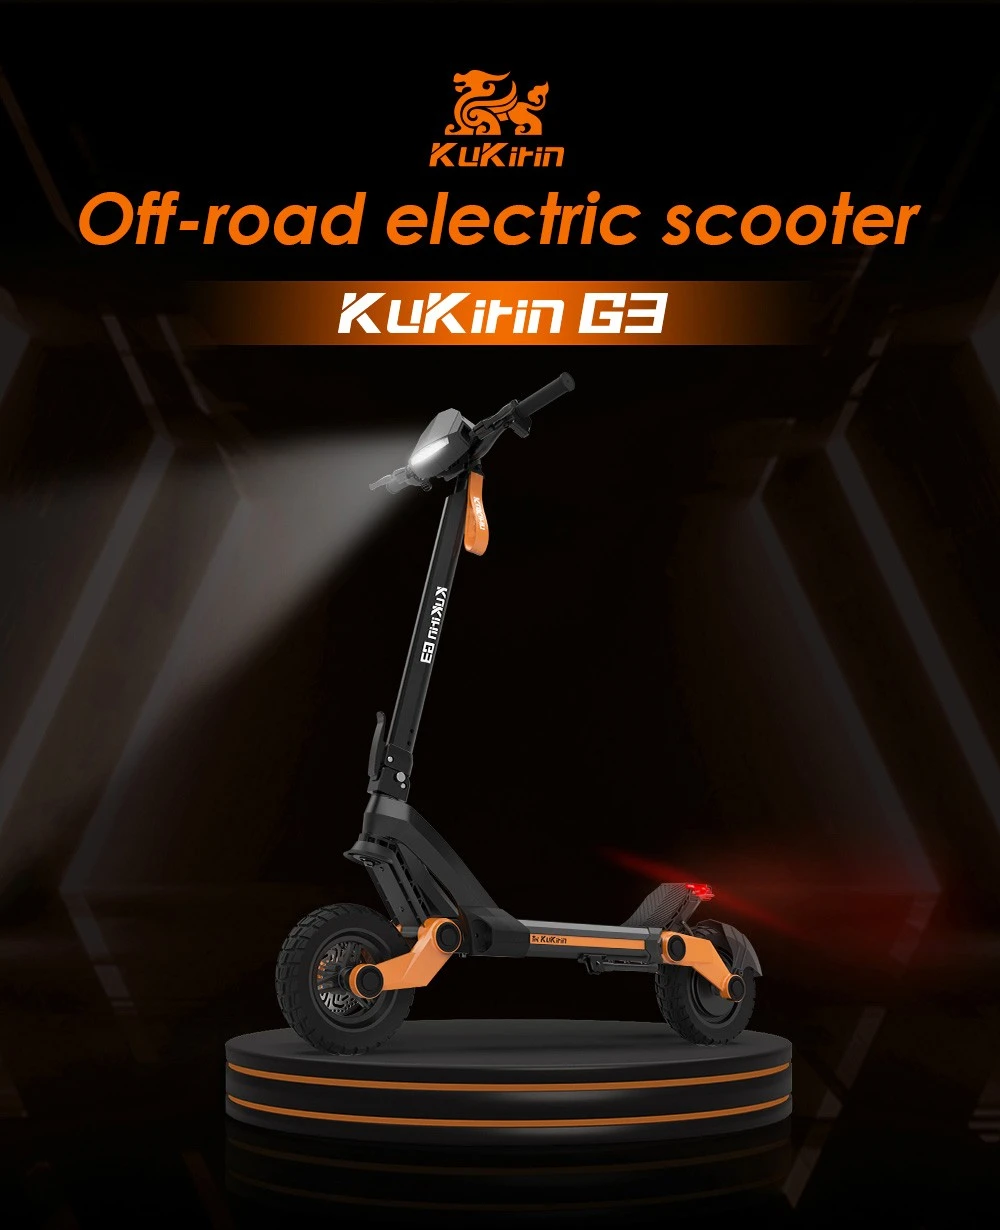 Kukirin G3 Scooter électrique 1200W moteur arrière 50 km/h vitesse maximale 52V 18Ah batterie au Lithium 70km d'autonomie frein à disque 120kg charge